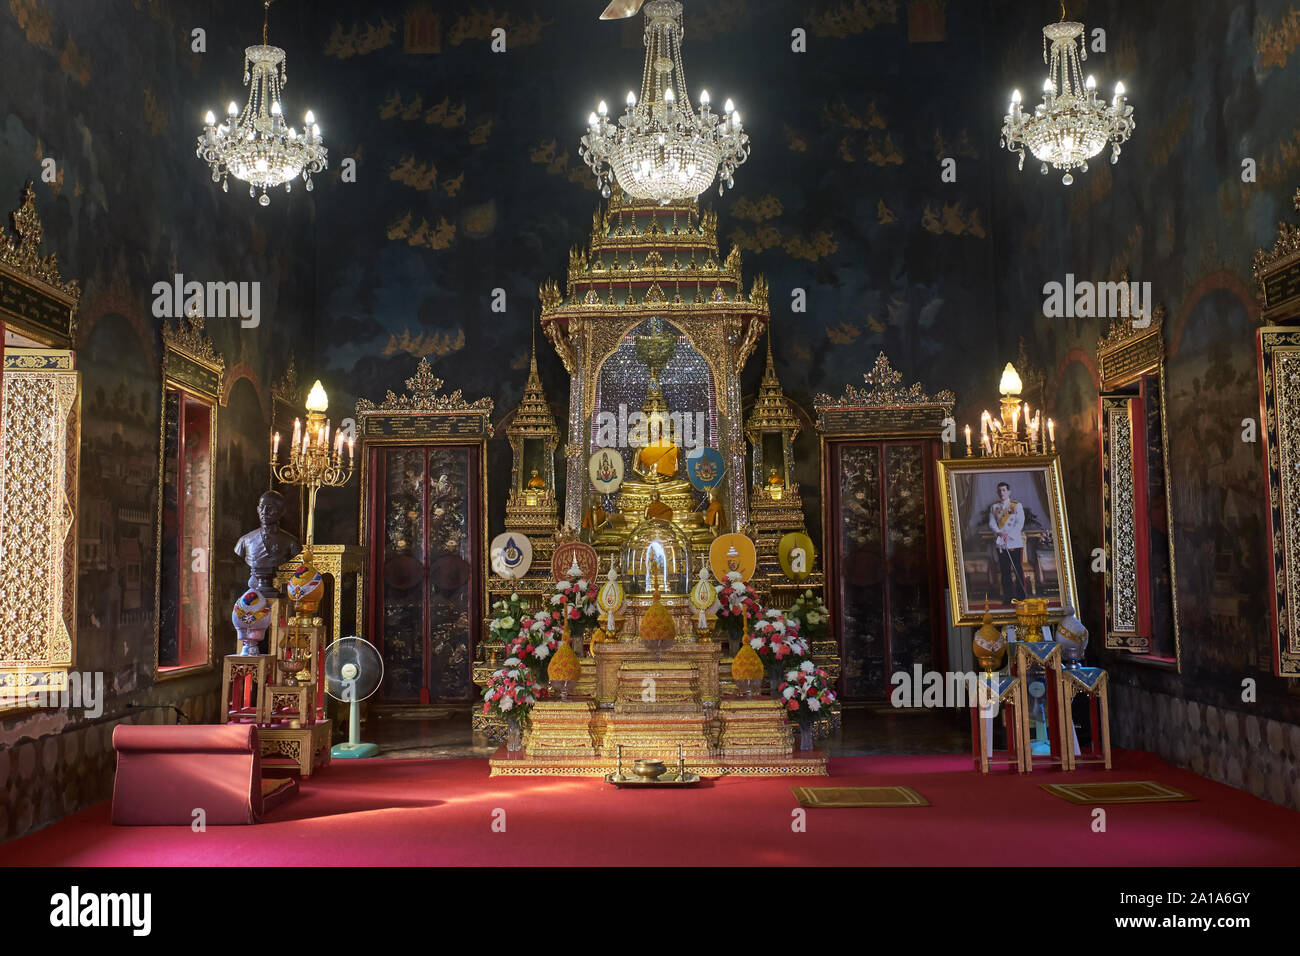 Une prière de culte sous des lustres dans Wat Rajapradit, Bangkok, Thaïlande, avec une statue de Bouddha et un portrait de roi thaïlandais Maha Vajiralongkorn (r) Banque D'Images